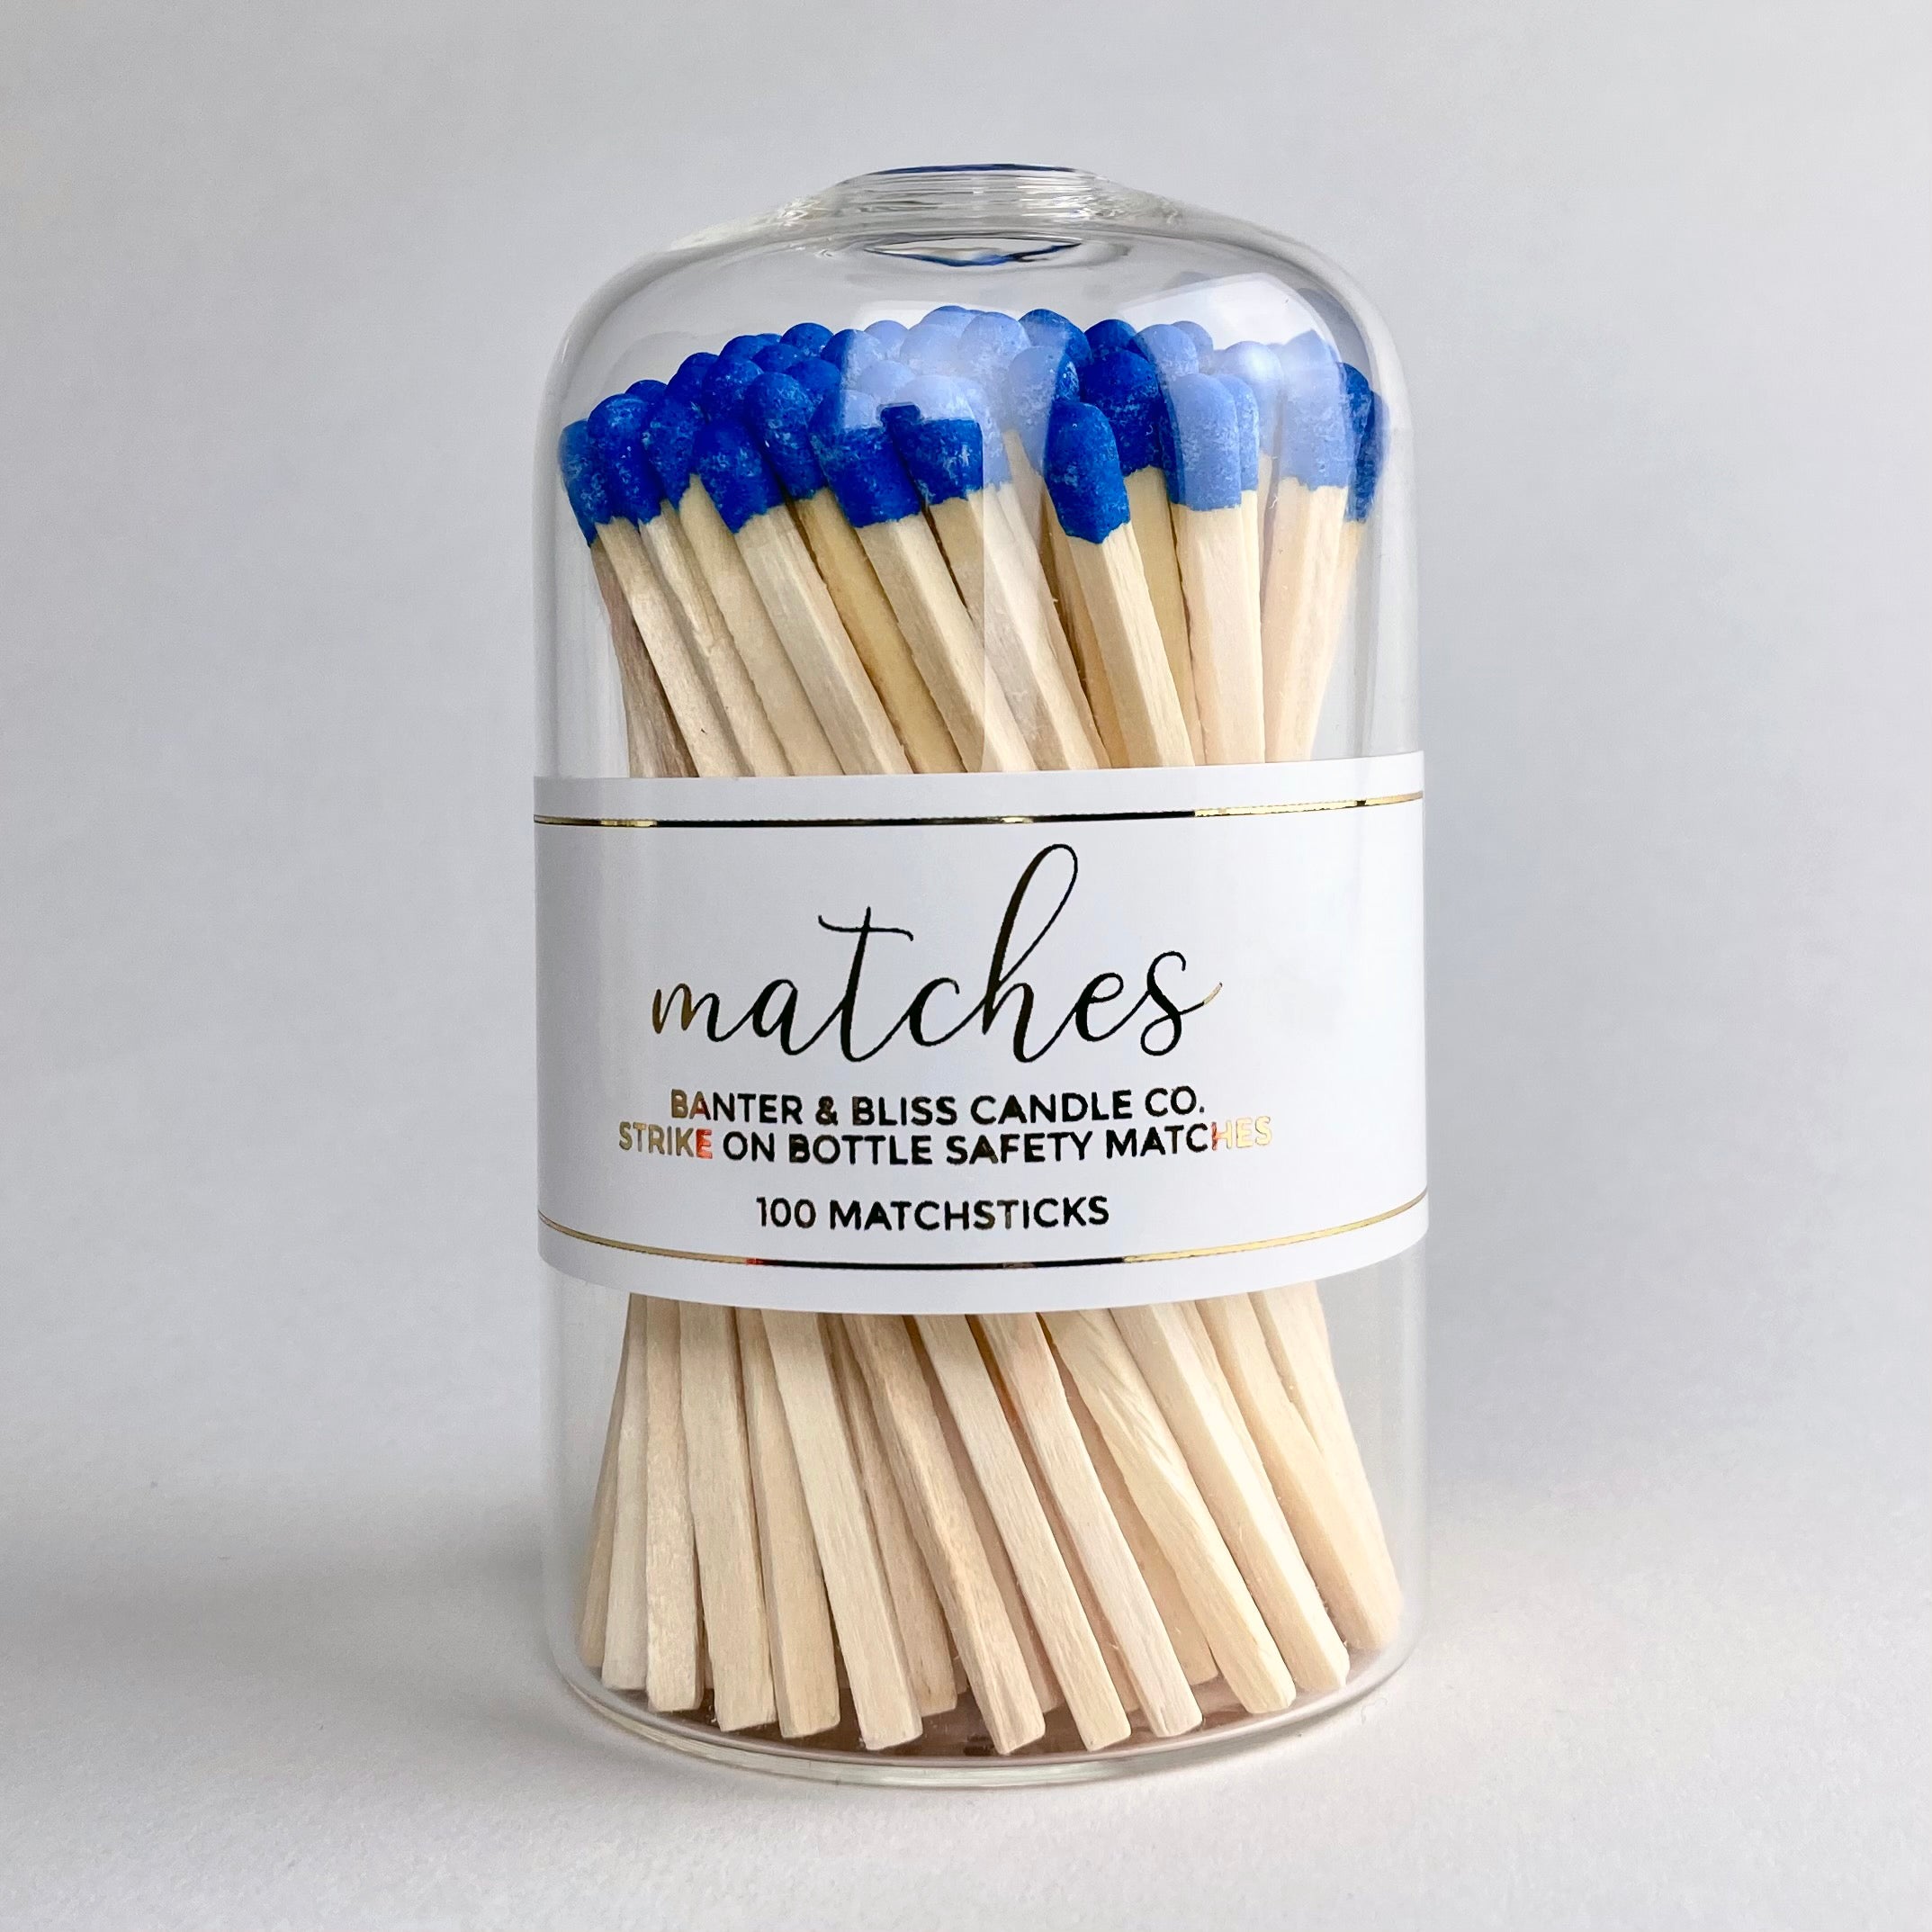 Banter & Bliss Modern Matchstick Bottle with Blue Matches